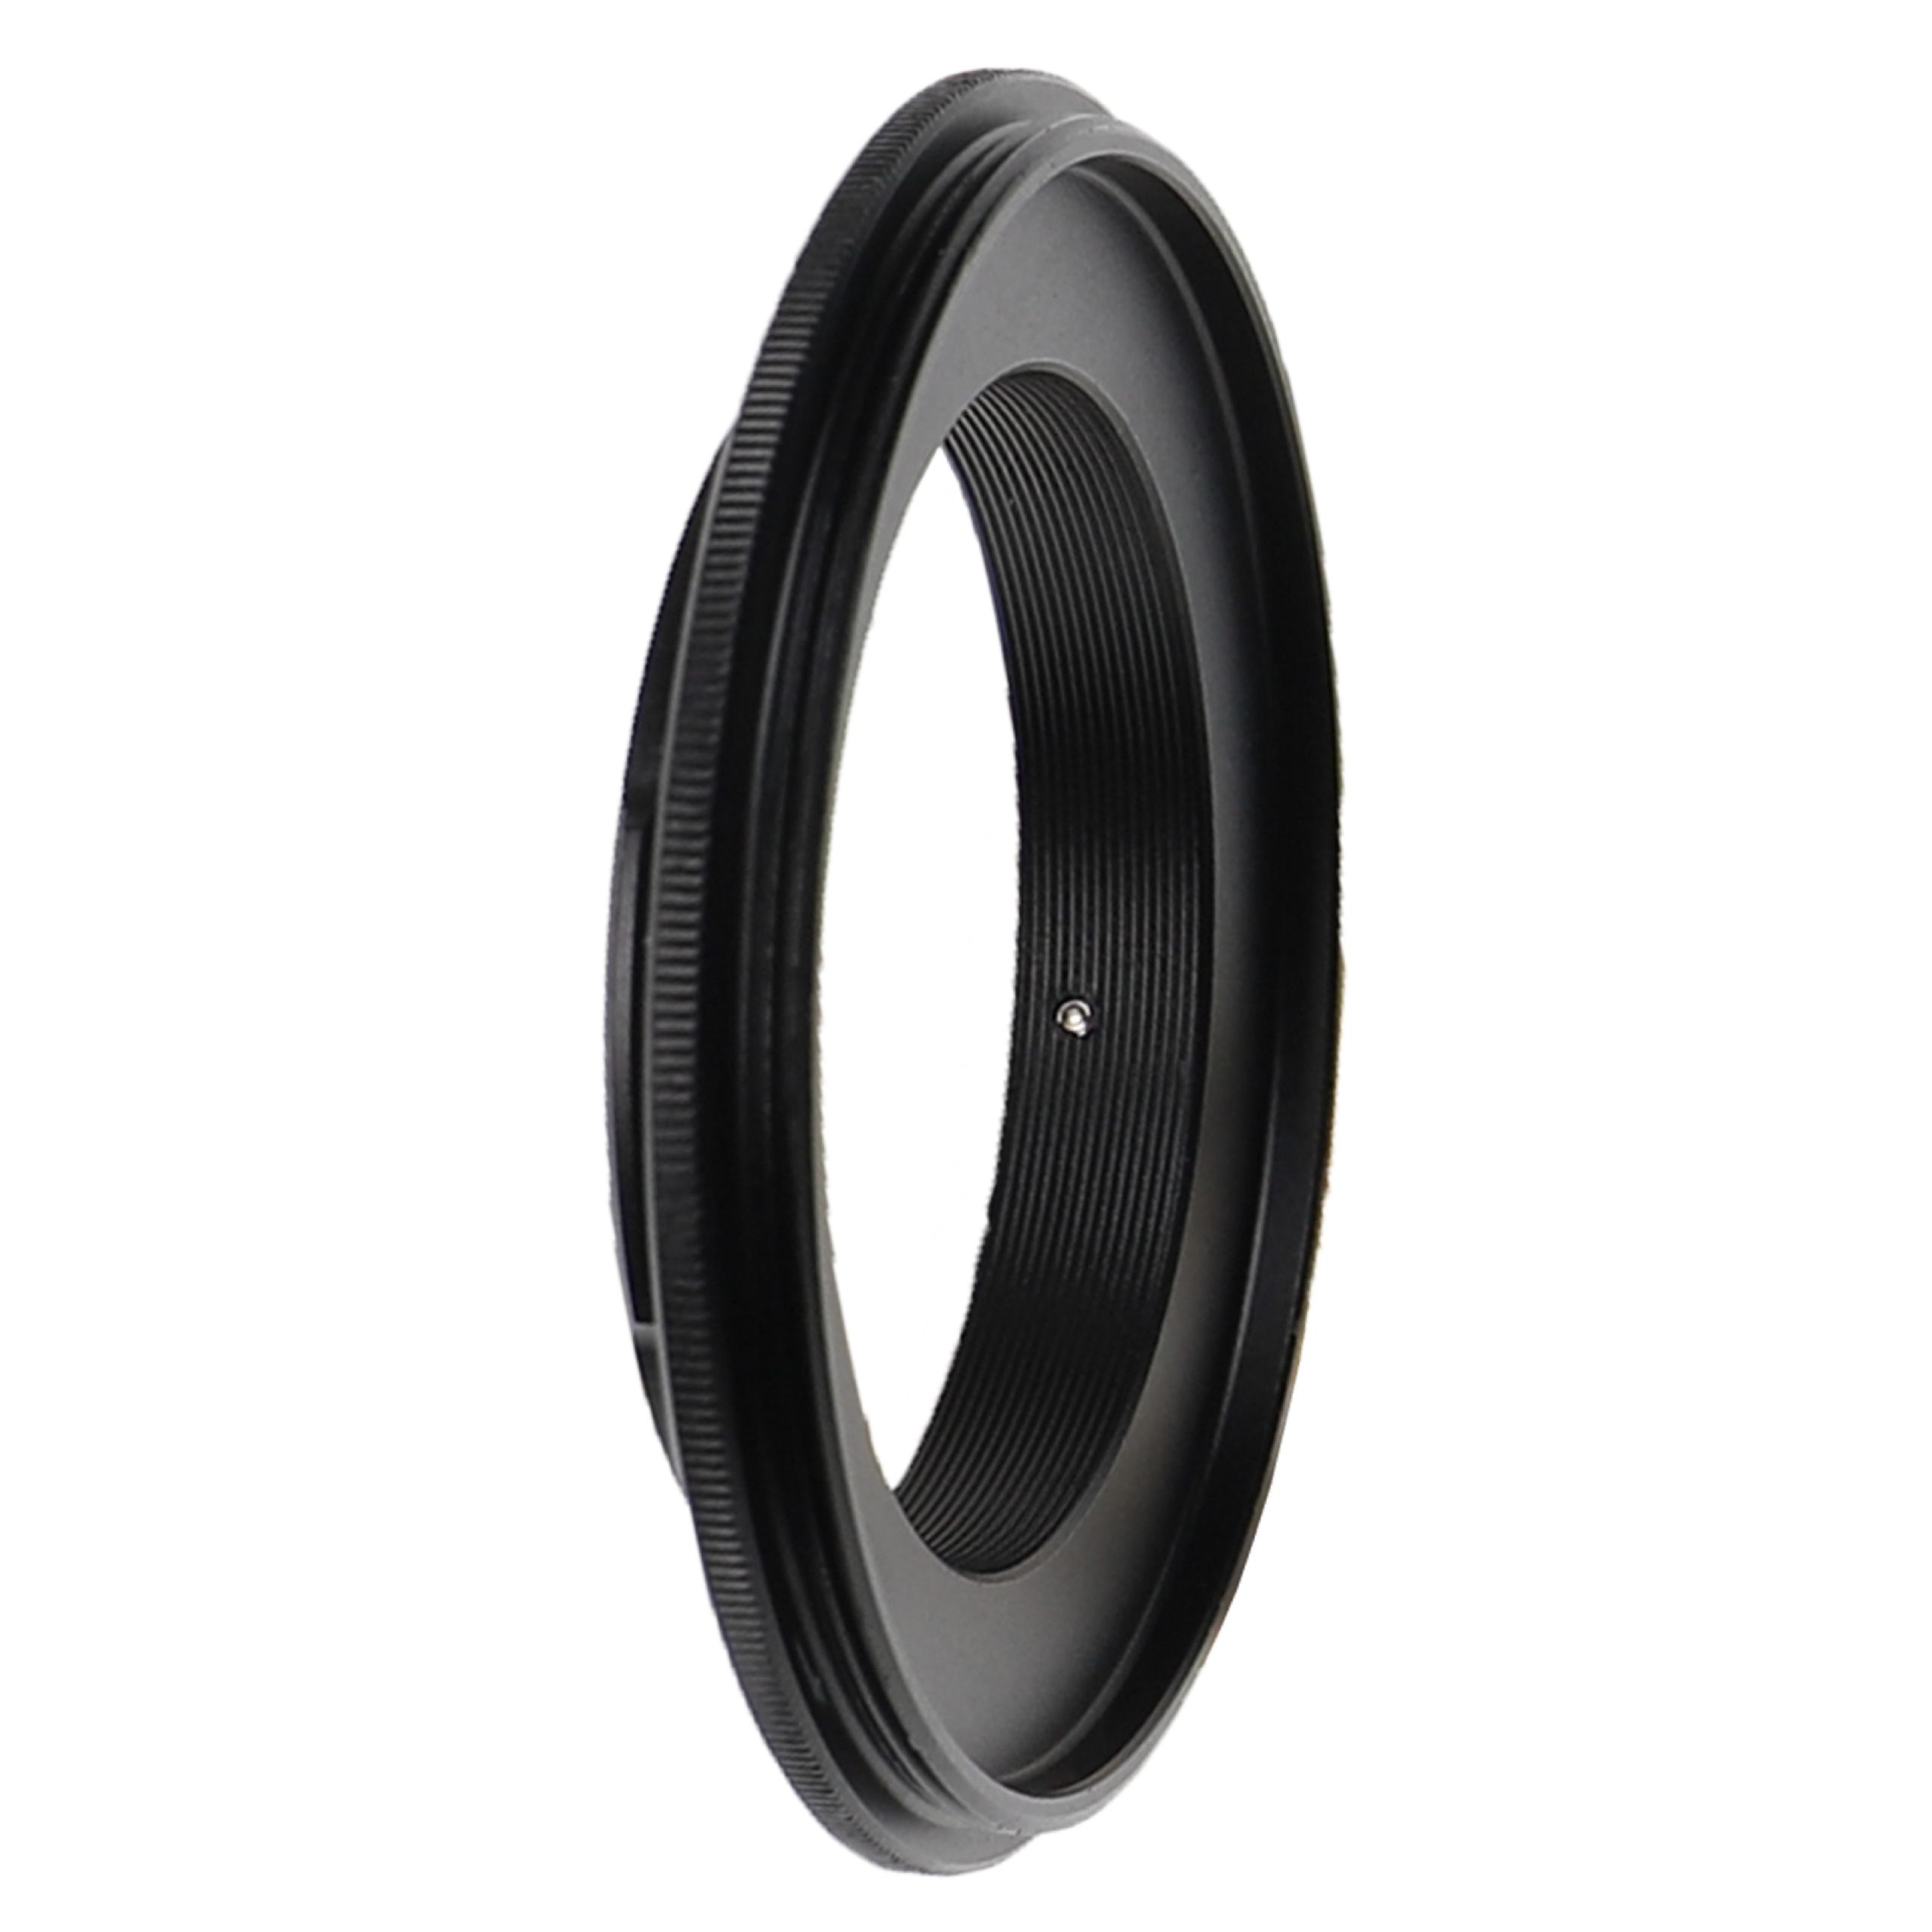 52 mm Retro Adapter suitable for DMC-G1 Panasonic, Olympus DMC-G1 Cameras & Lenses etc. - Retro Ring